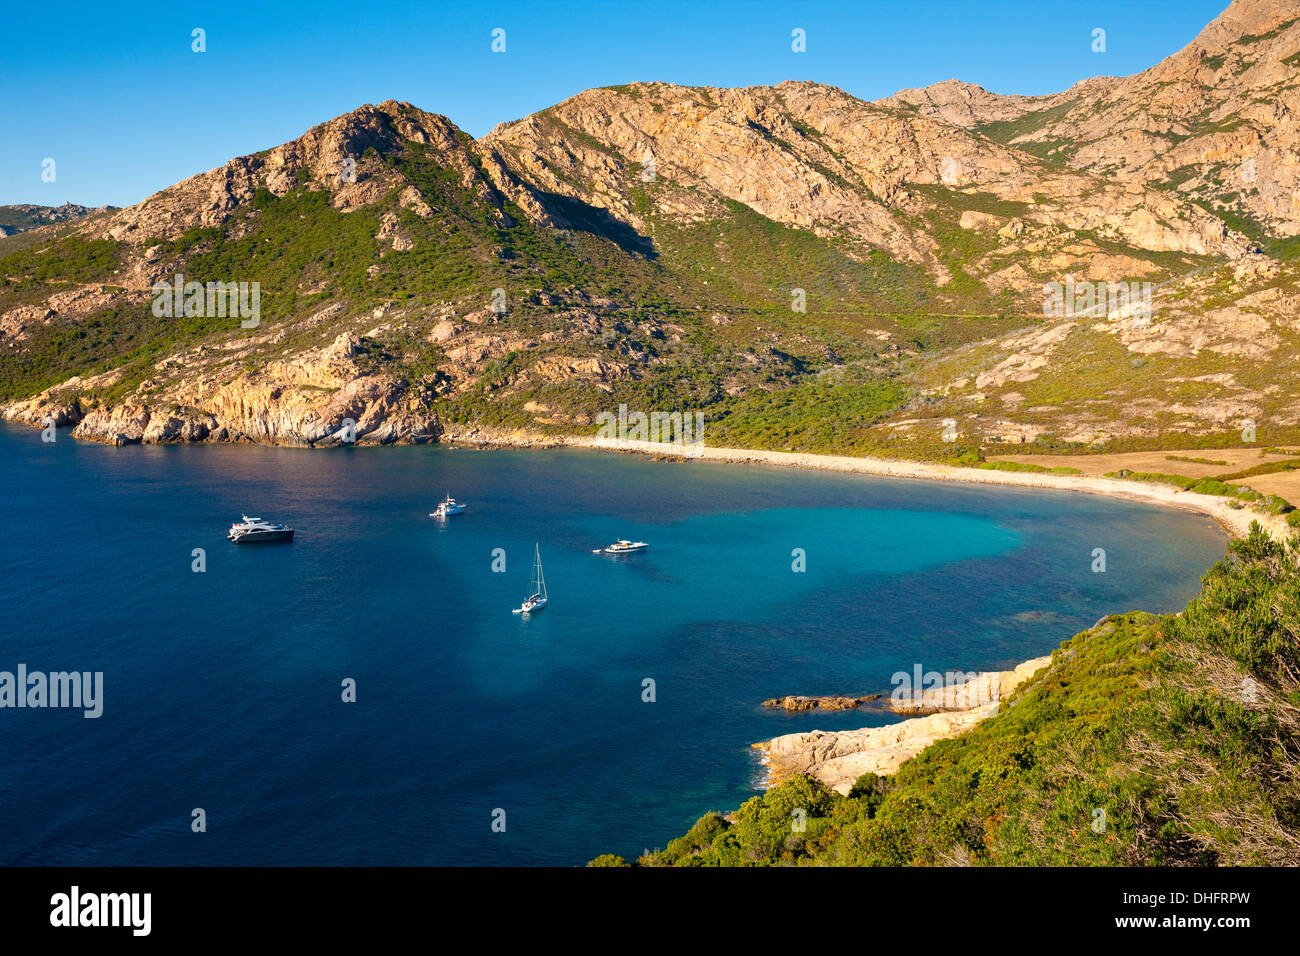 La riserva naturale di Scandola, riconosciuta dalle Nazioni Unite come un patrimonio mondiale naturale, Corsica, Francia, vicino a Porto Foto Stock